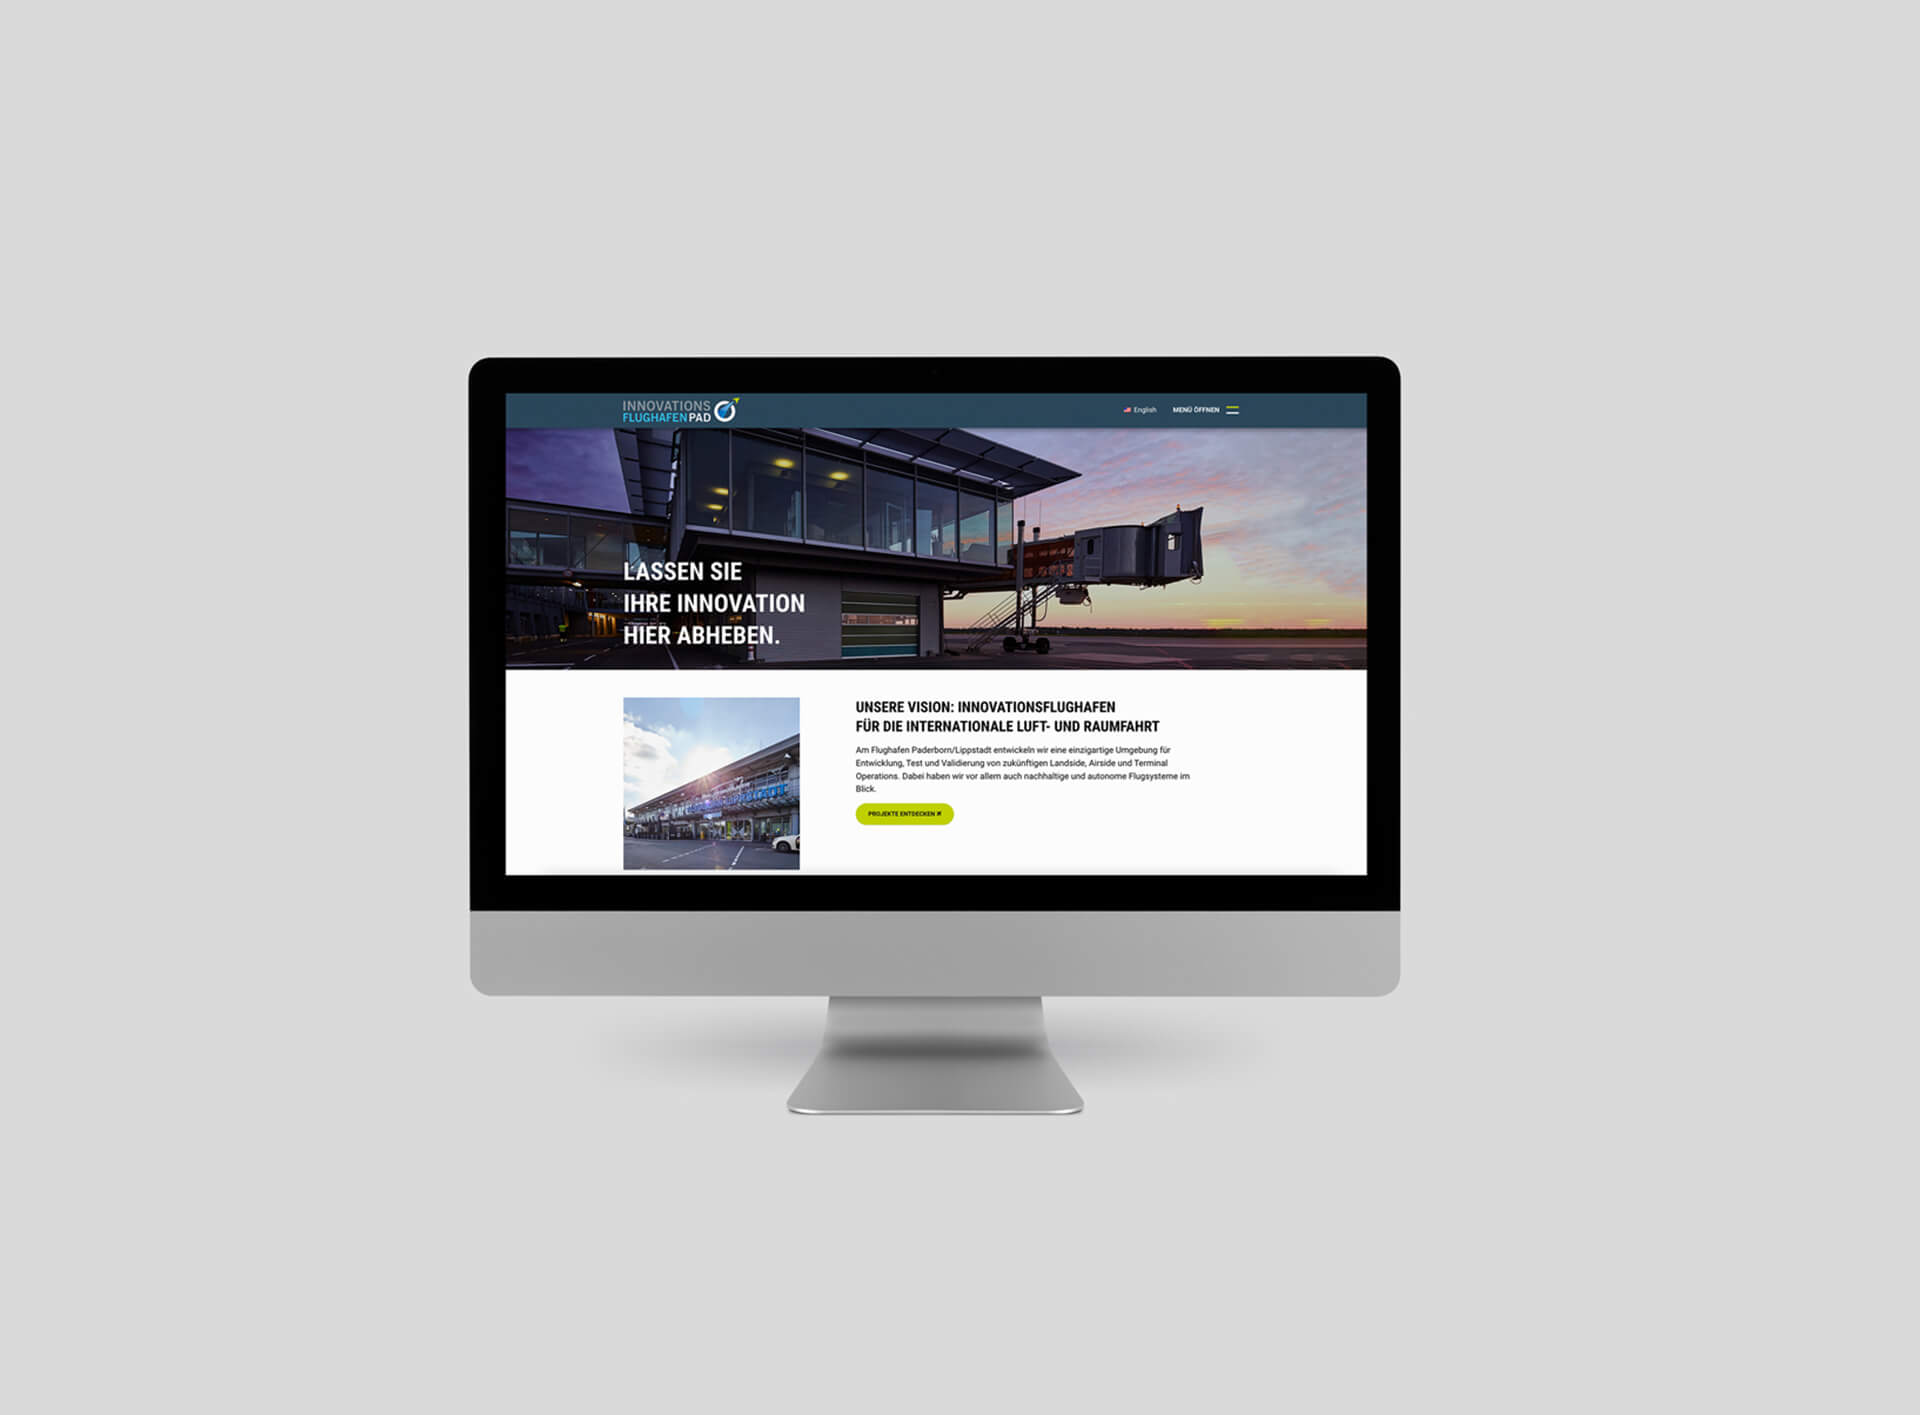 Homepagebild der Website Innovationsflughafen auf einem IMac